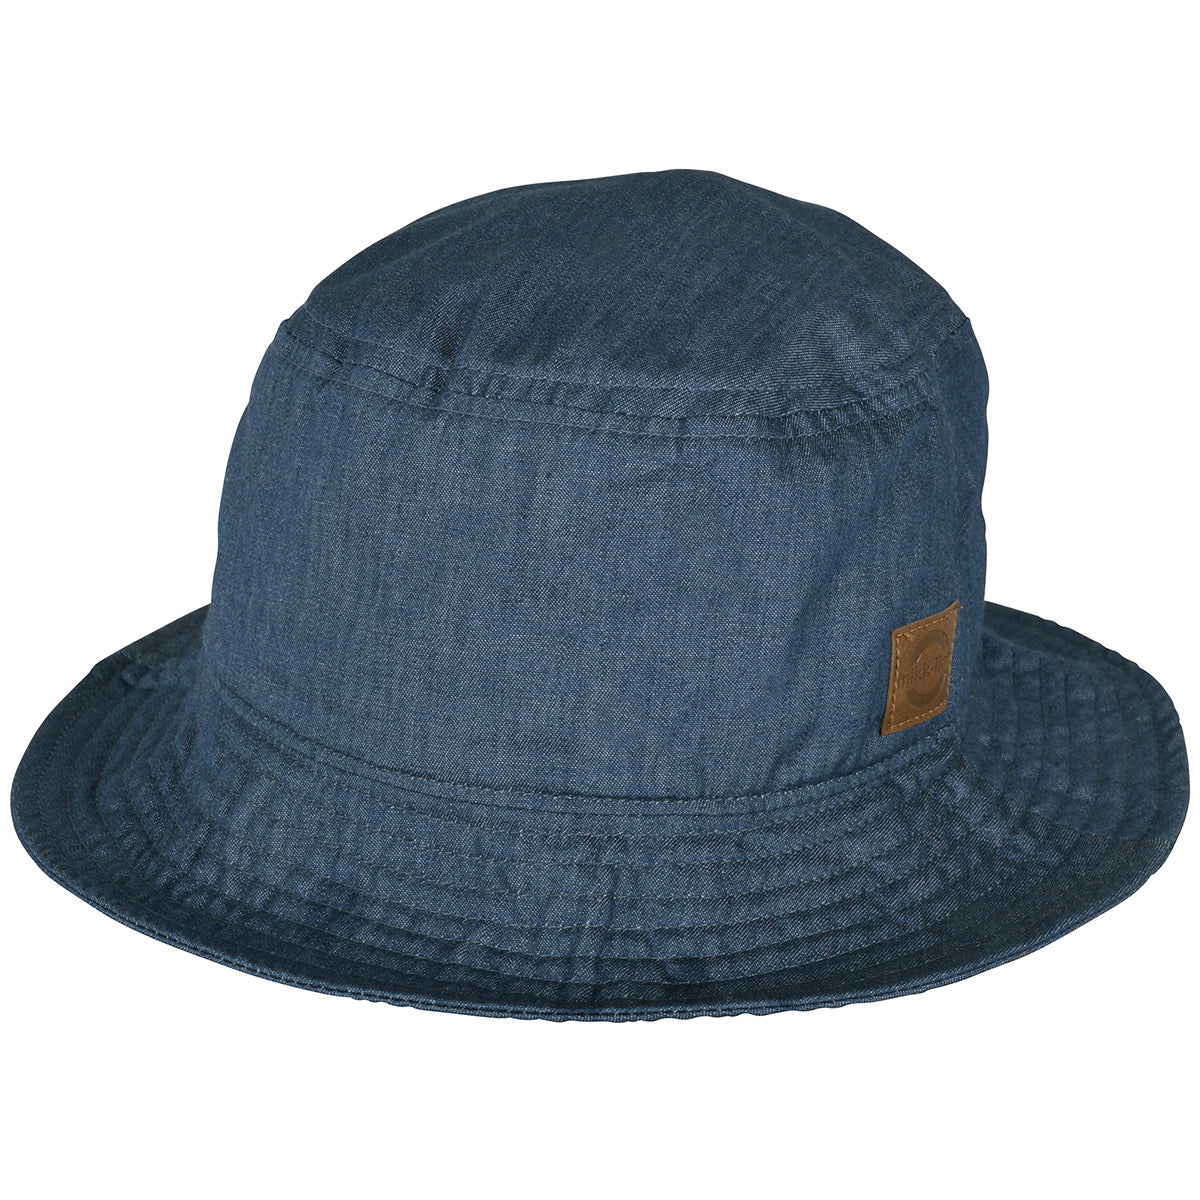 Mikk-Line - UV Summer Bucket Hat, 98108 - Denim Blue